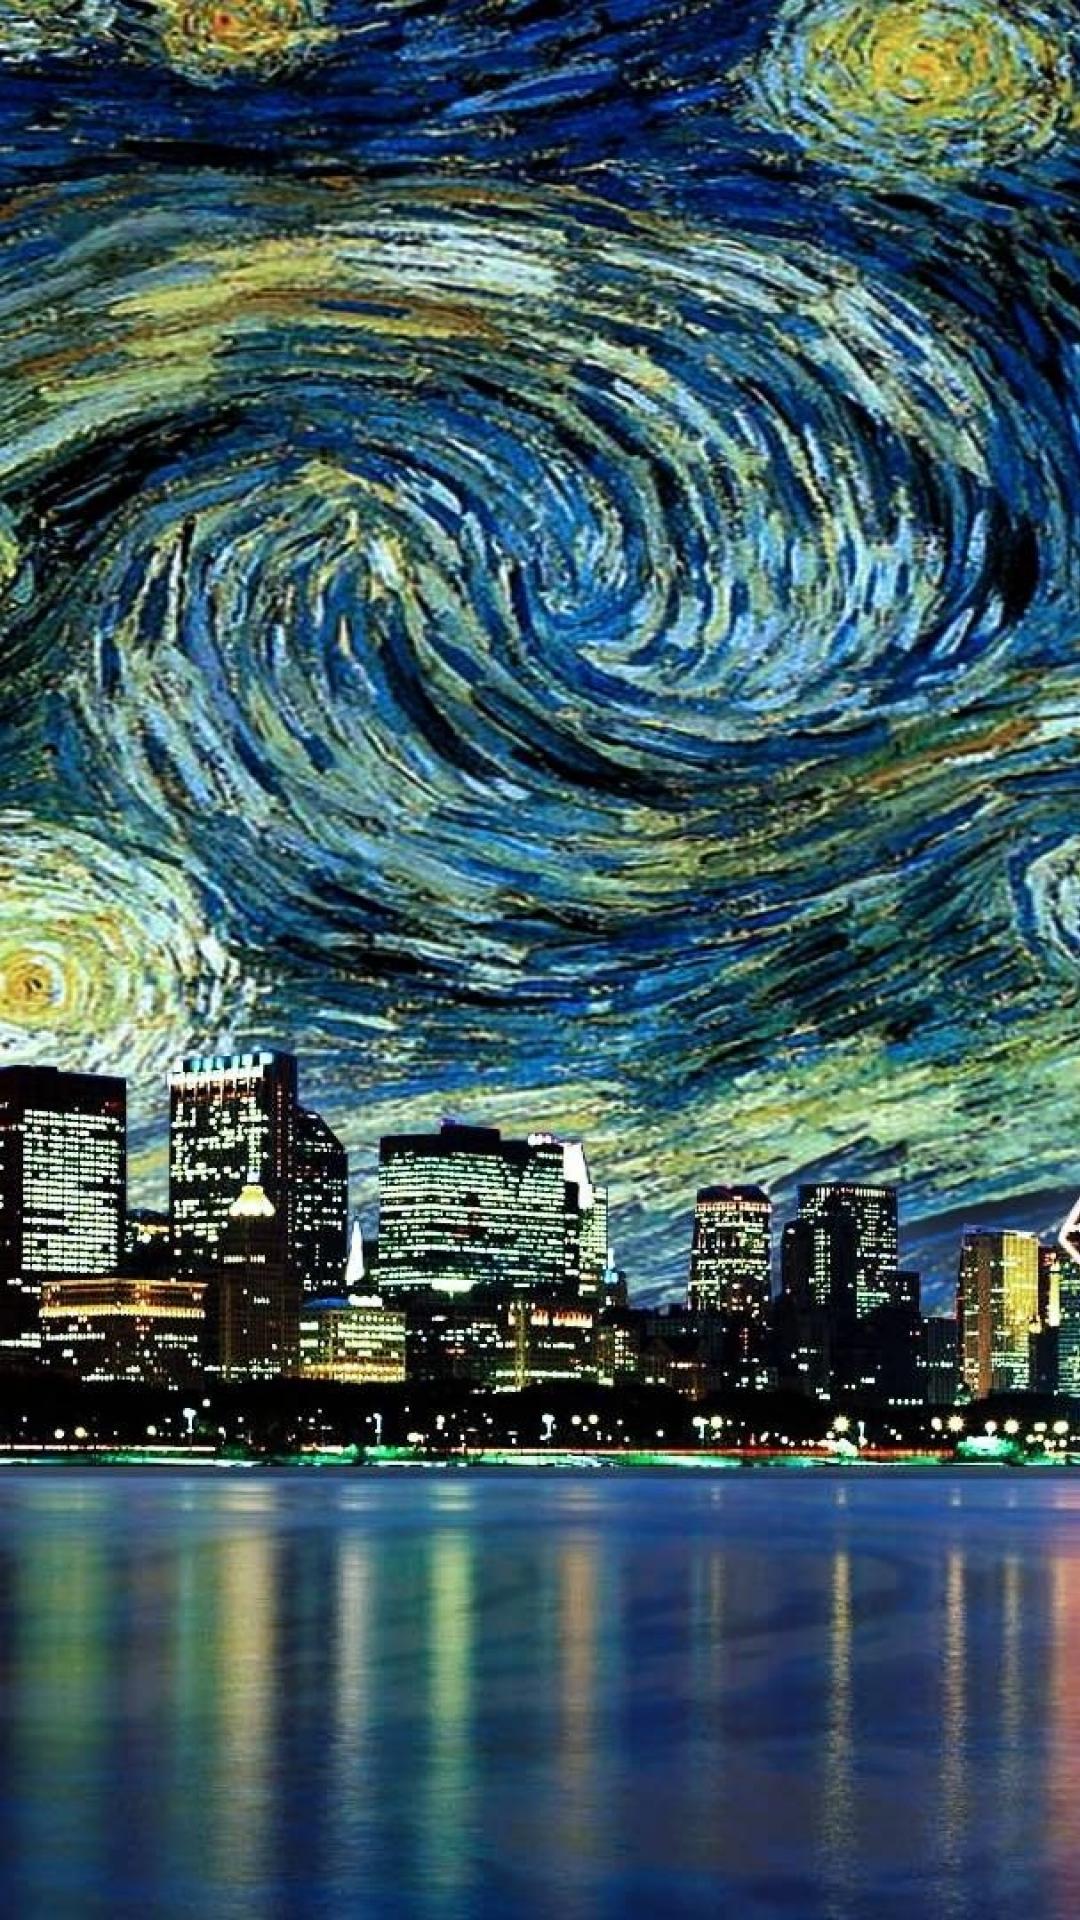 TARDIS Wallpaper Van Gogh Style. by Koshka-Stuff on DeviantArt